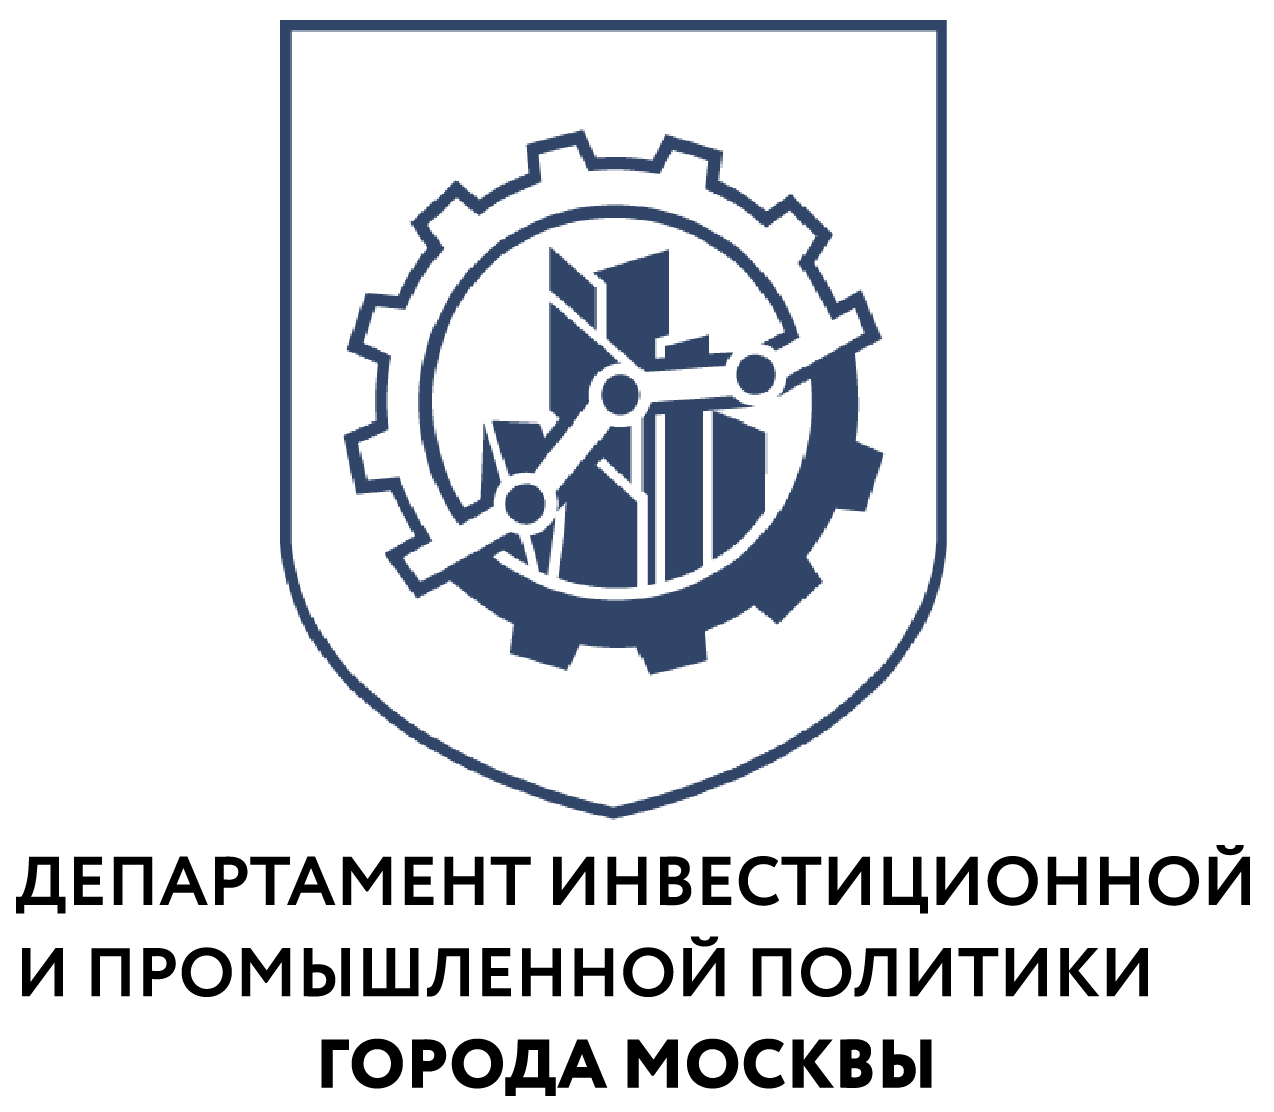 Московские промышленники представили свои разработки в Ташкенте - фото 1